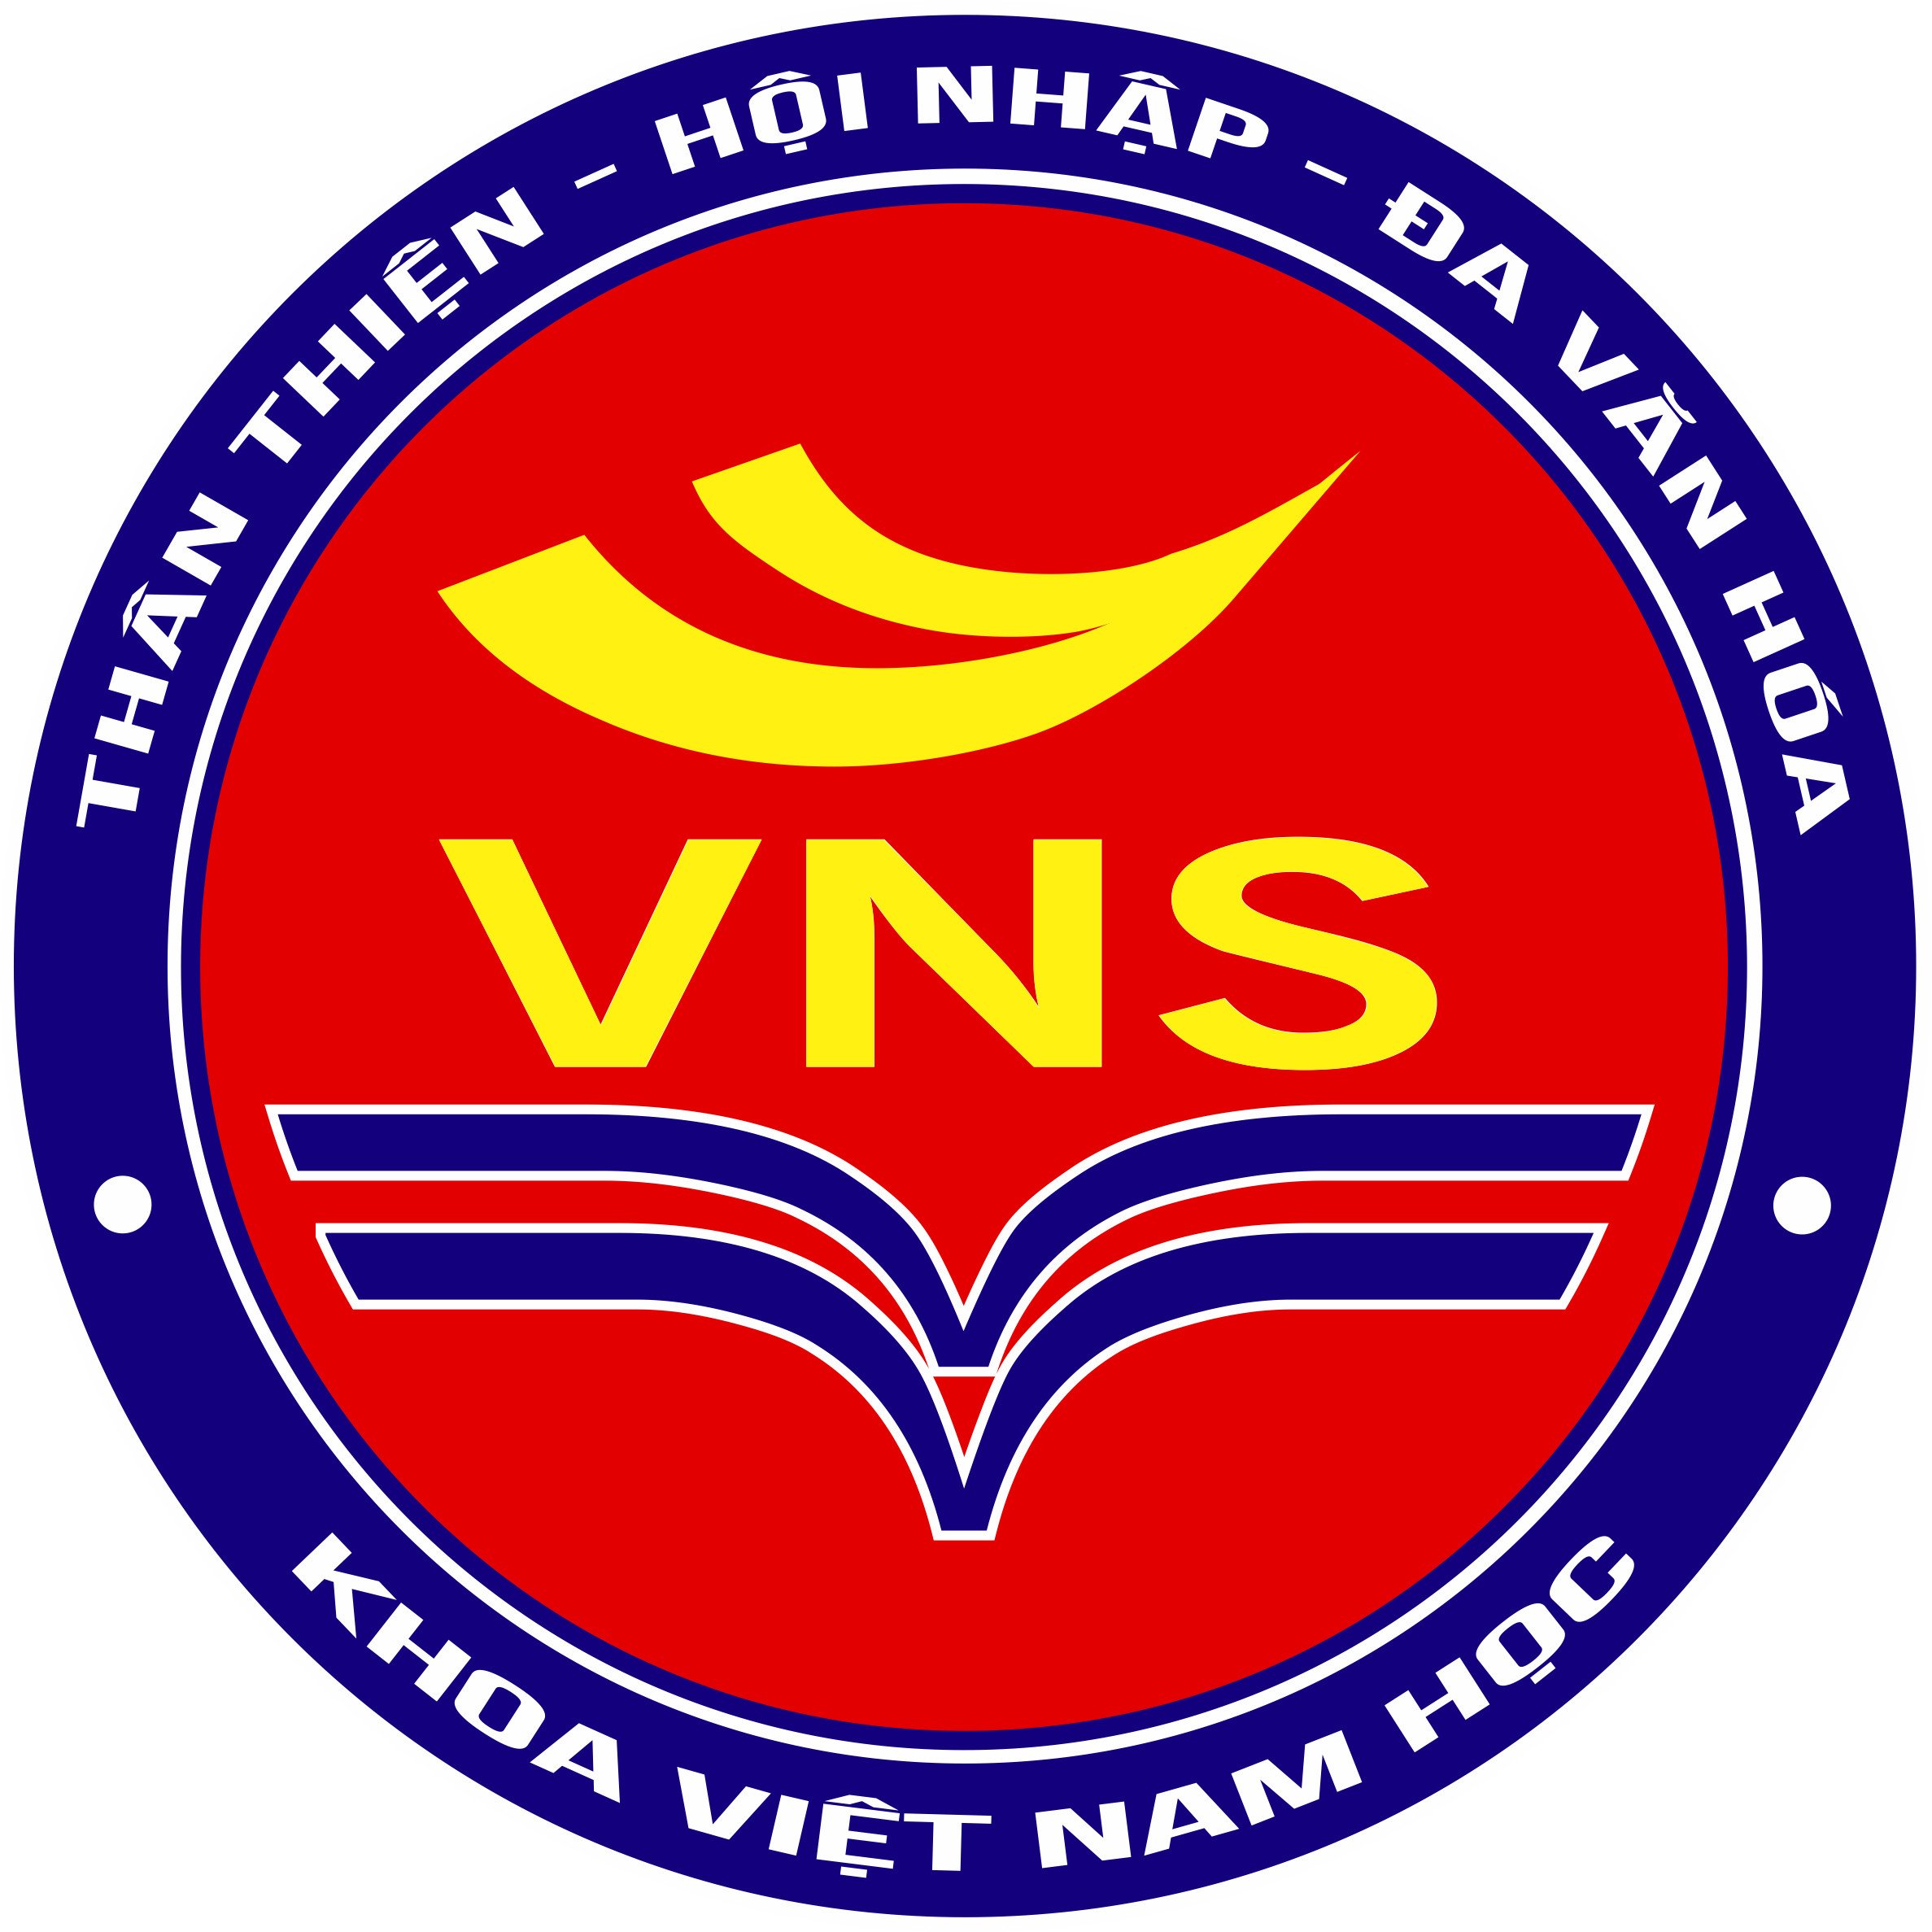 Khoa Việt Nam học